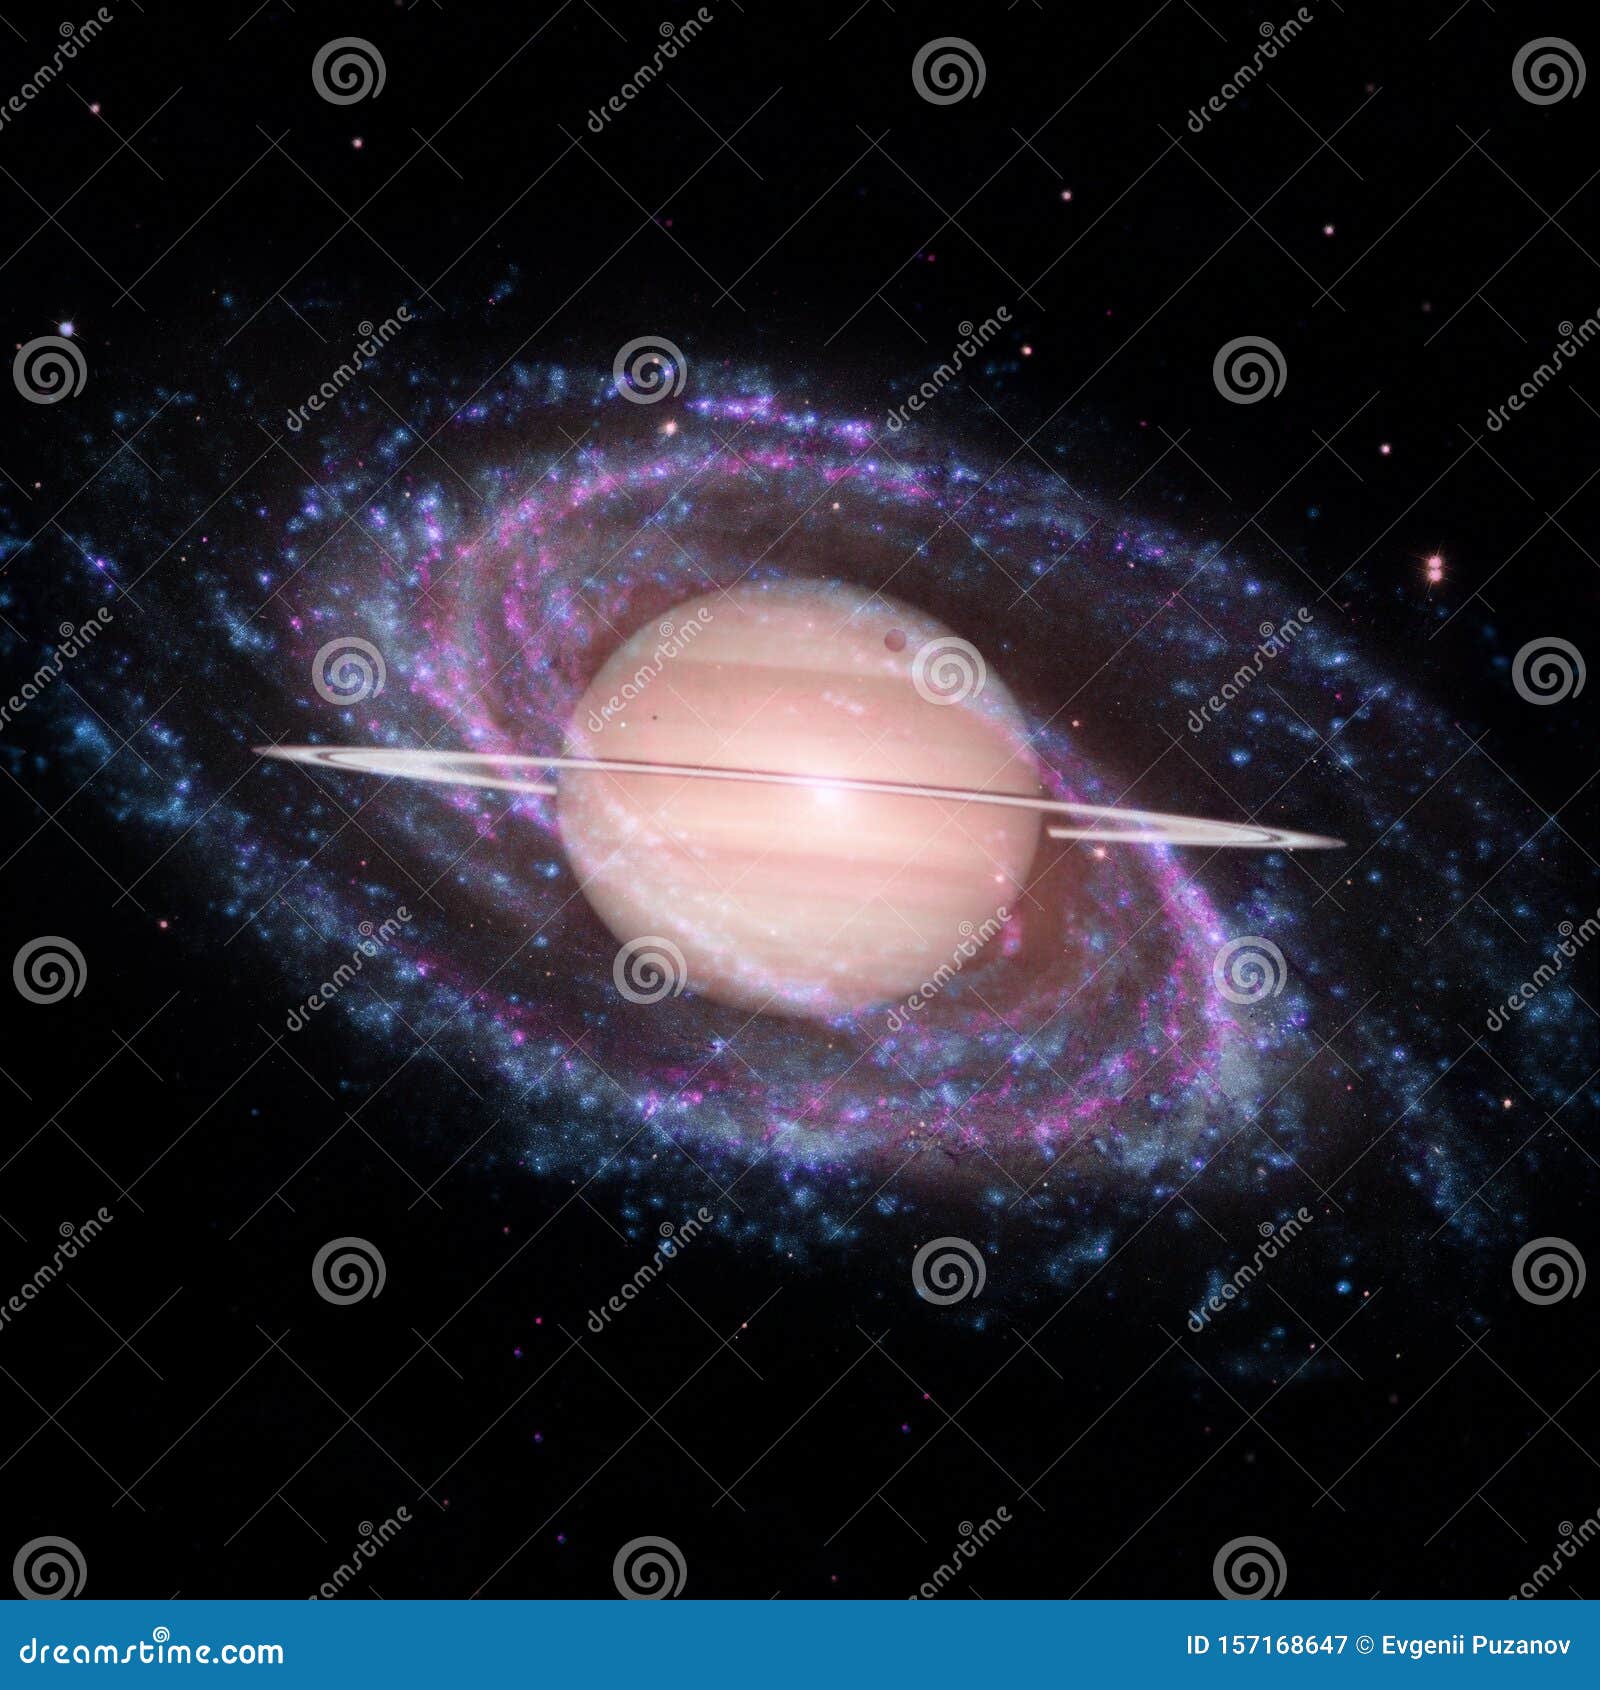 土星 太阳系的行星美国宇航局提供的这幅图像的元素库存图片 图片包括有